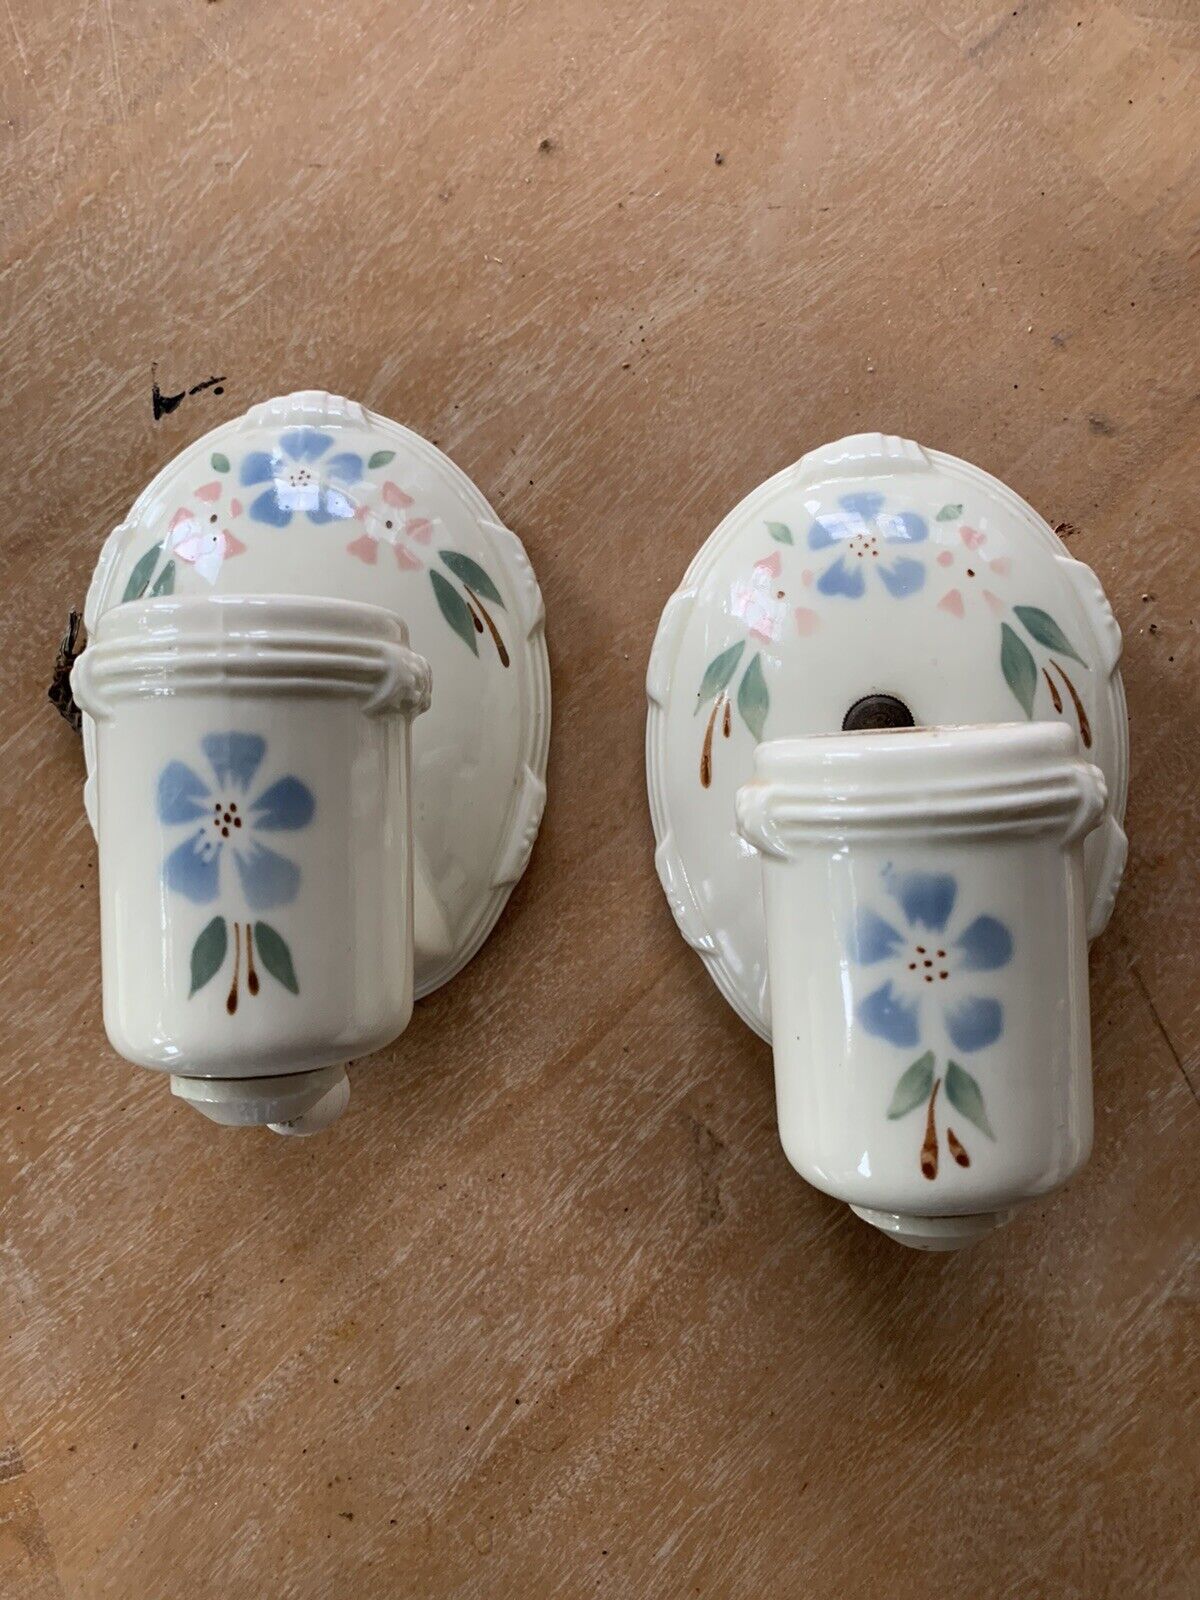 Porcelier Porcelain Art Nouveau Floral Flush Mount Light Fixture Sconce (Pair)